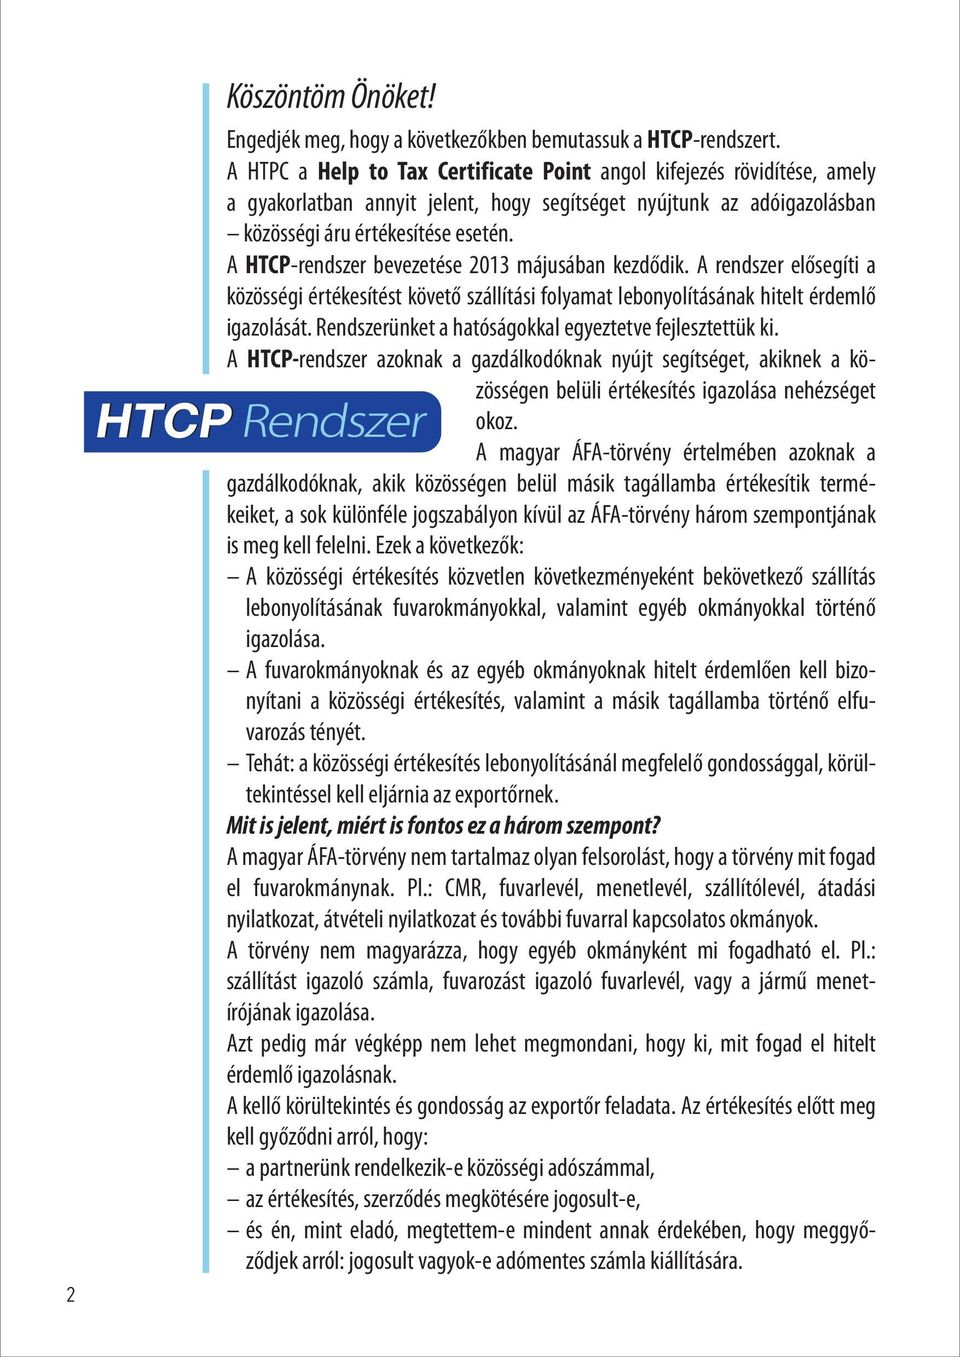 A HTCP-rendszer bevezetése 2013 májusában kezdődik. A rendszer elősegíti a közösségi értékesítést követő szállítási folyamat lebonyolításának hitelt érdemlő igazolását.